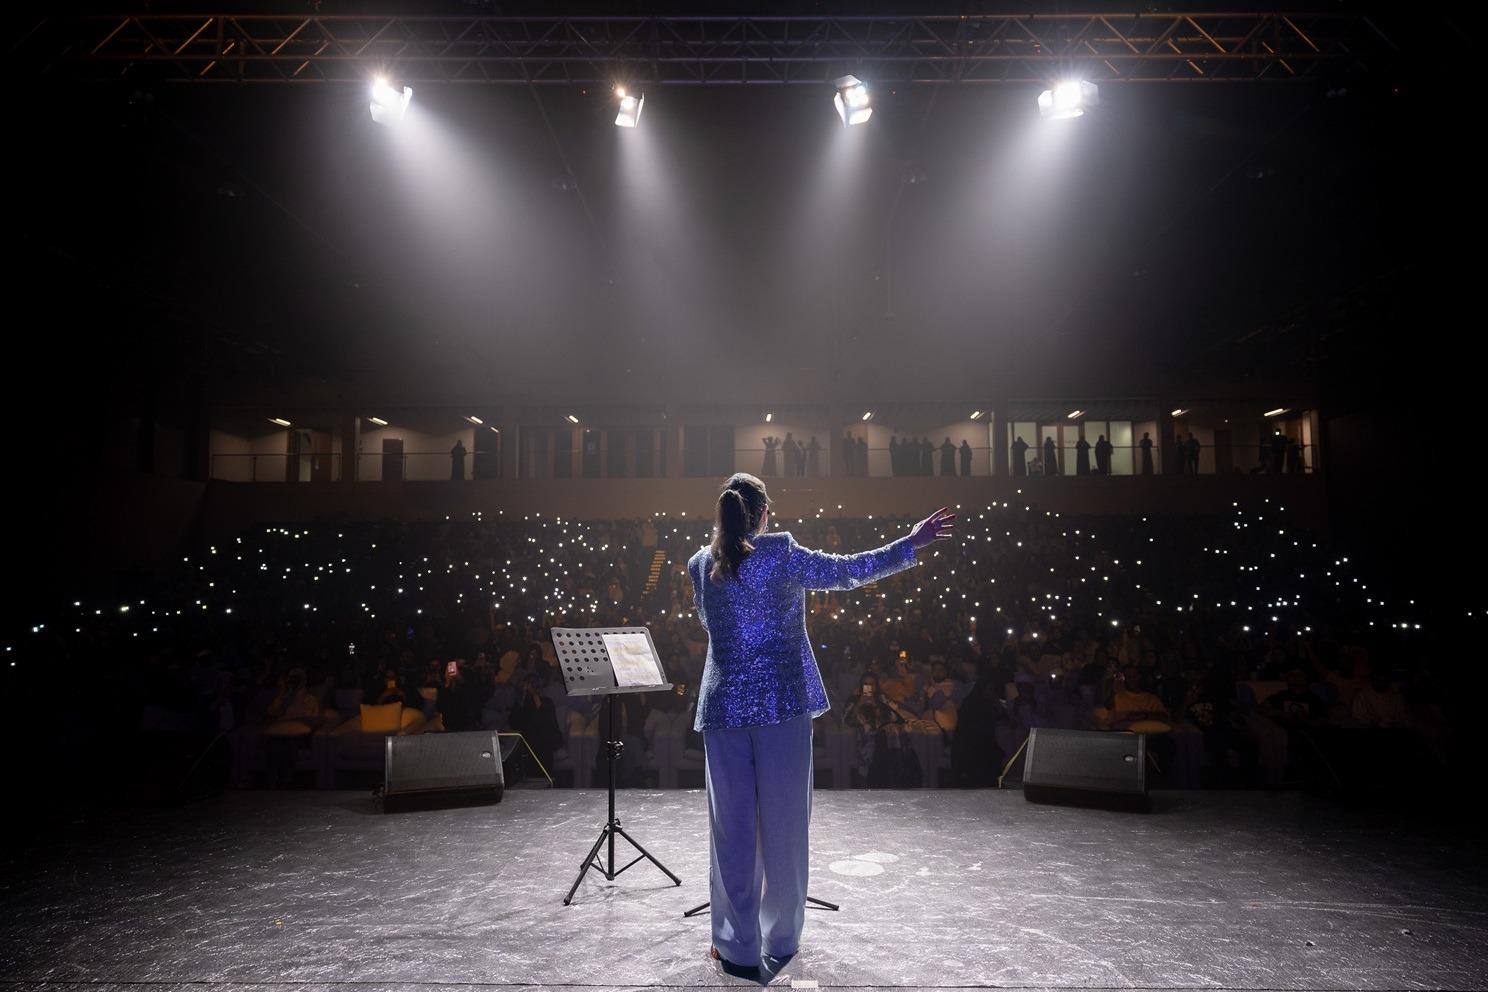 رشا رزق صوت «سبيس تون» الذهبd تسحر الآلاف بأغانيها